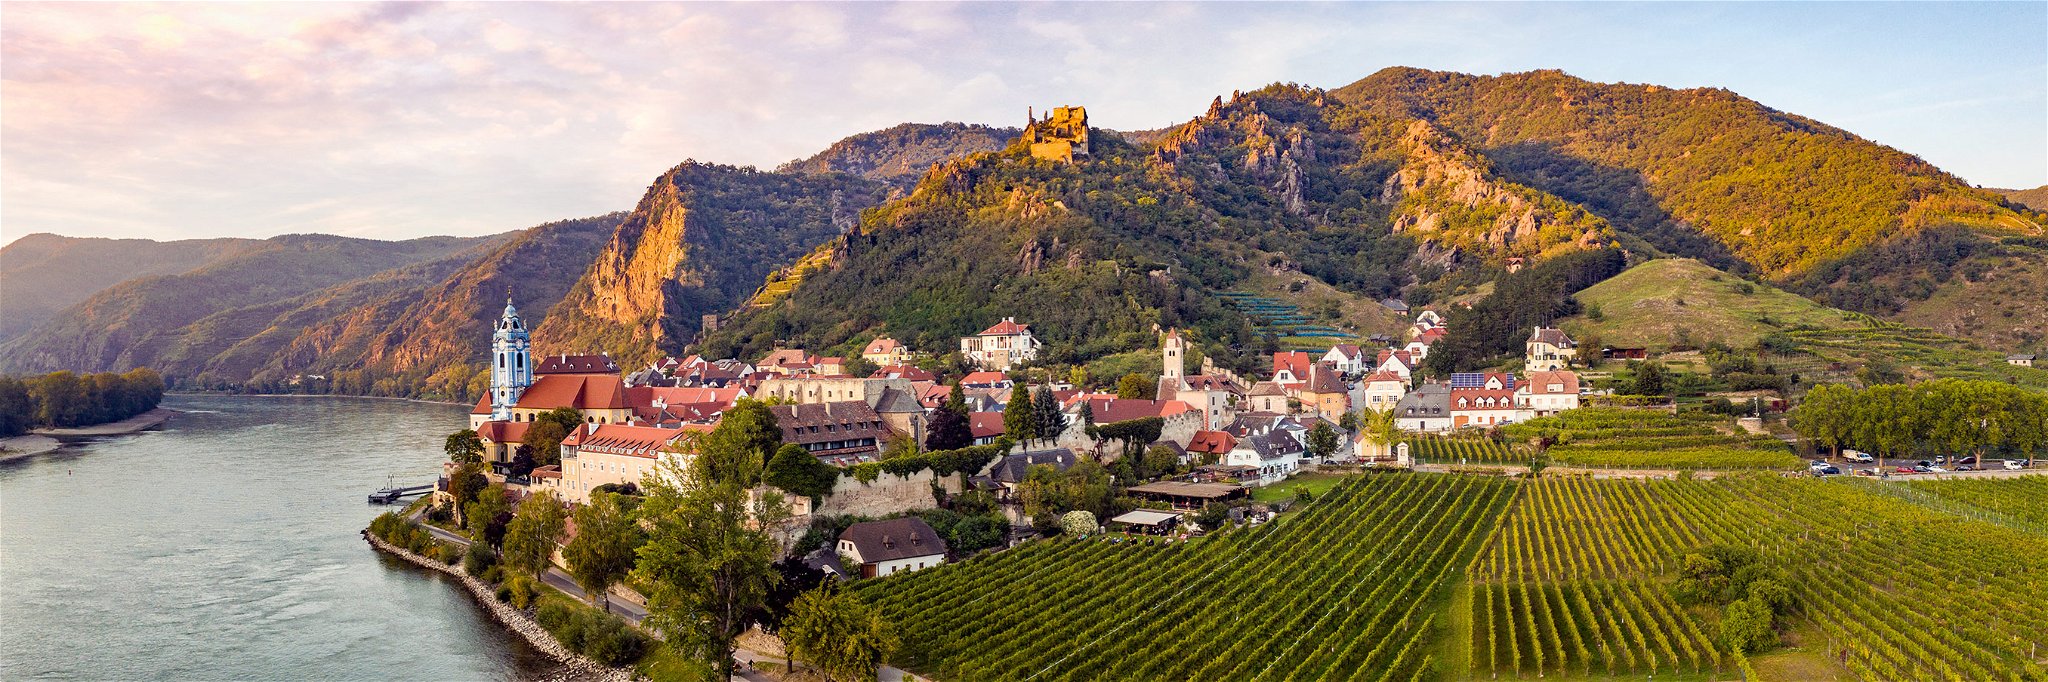 Dürnstein ist wohl einer der bekanntesten Orte in der Wachau.